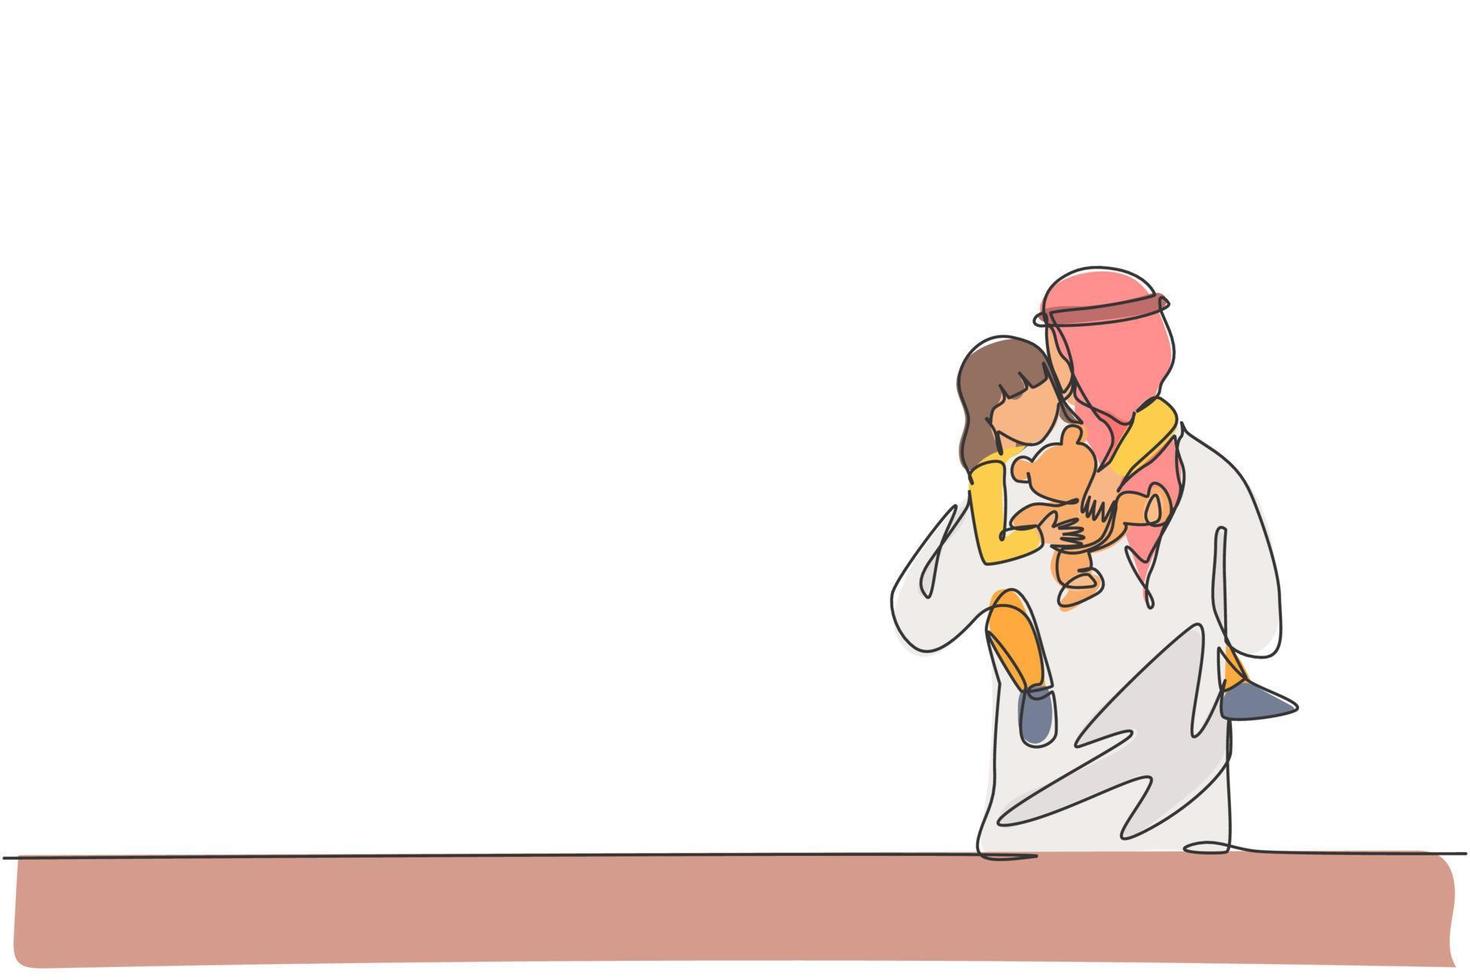 único desenho de linha contínua do jovem pai islâmico abraçando sua filha sonolenta, segurando a boneca de brinquedo. conceito de parentalidade de família feliz muçulmana árabe. ilustração em vetor desenho desenho de uma linha